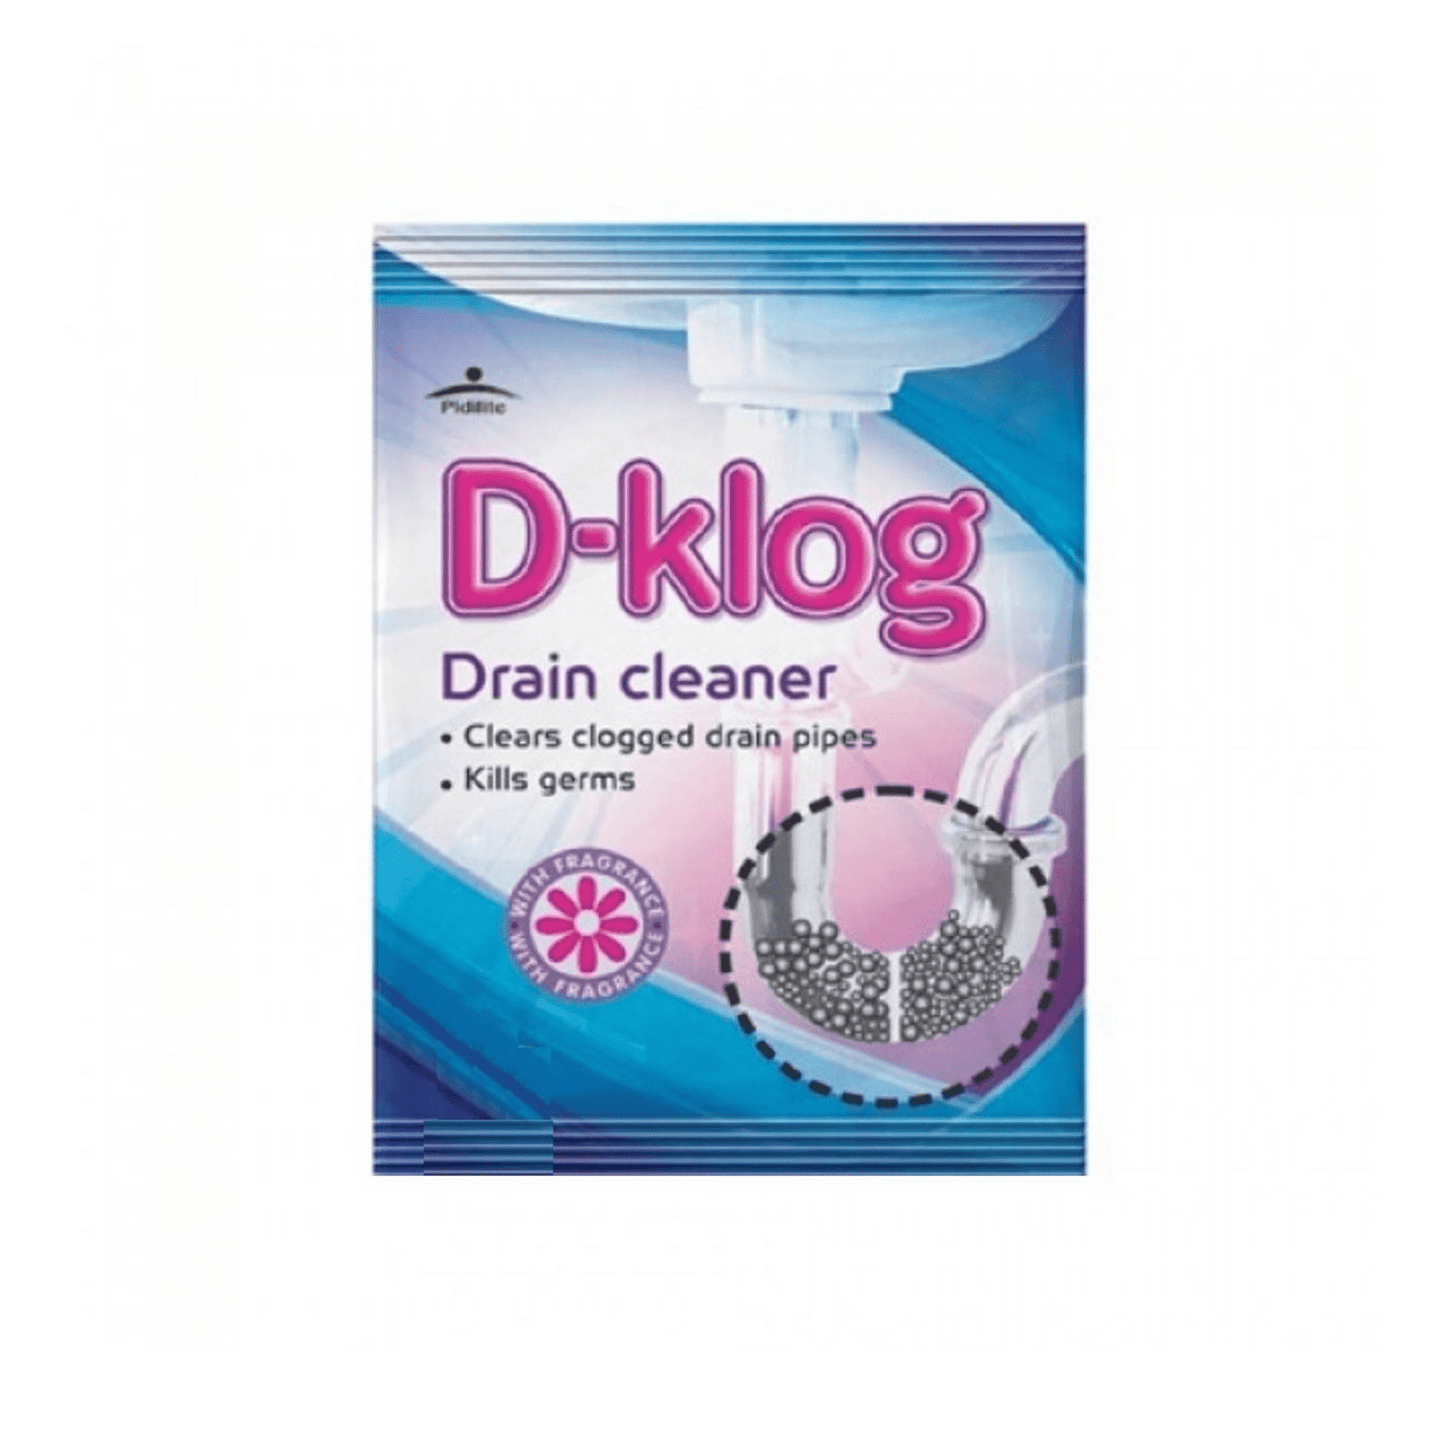 D Klog Drain Cleaner.